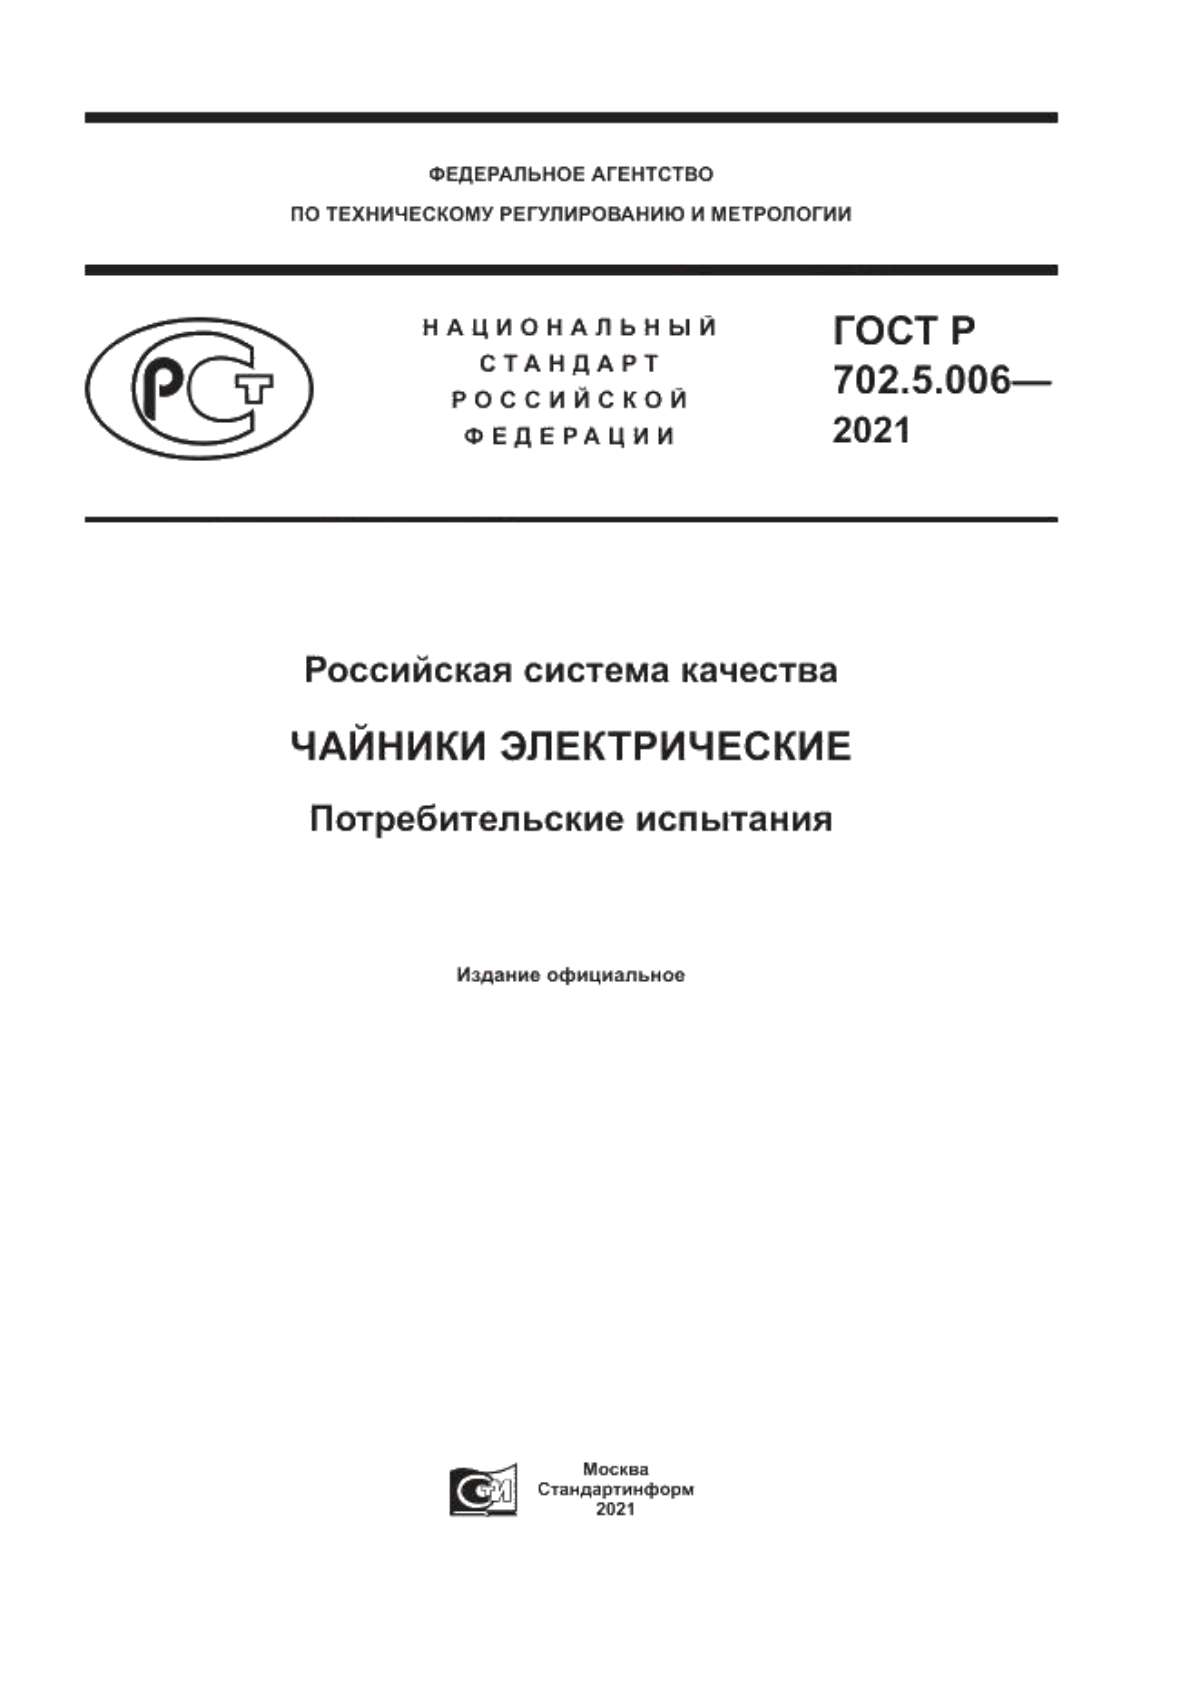 ГОСТ Р 702.5.006-2021 Российская система качества. Чайники электрические . Потребительские испытания